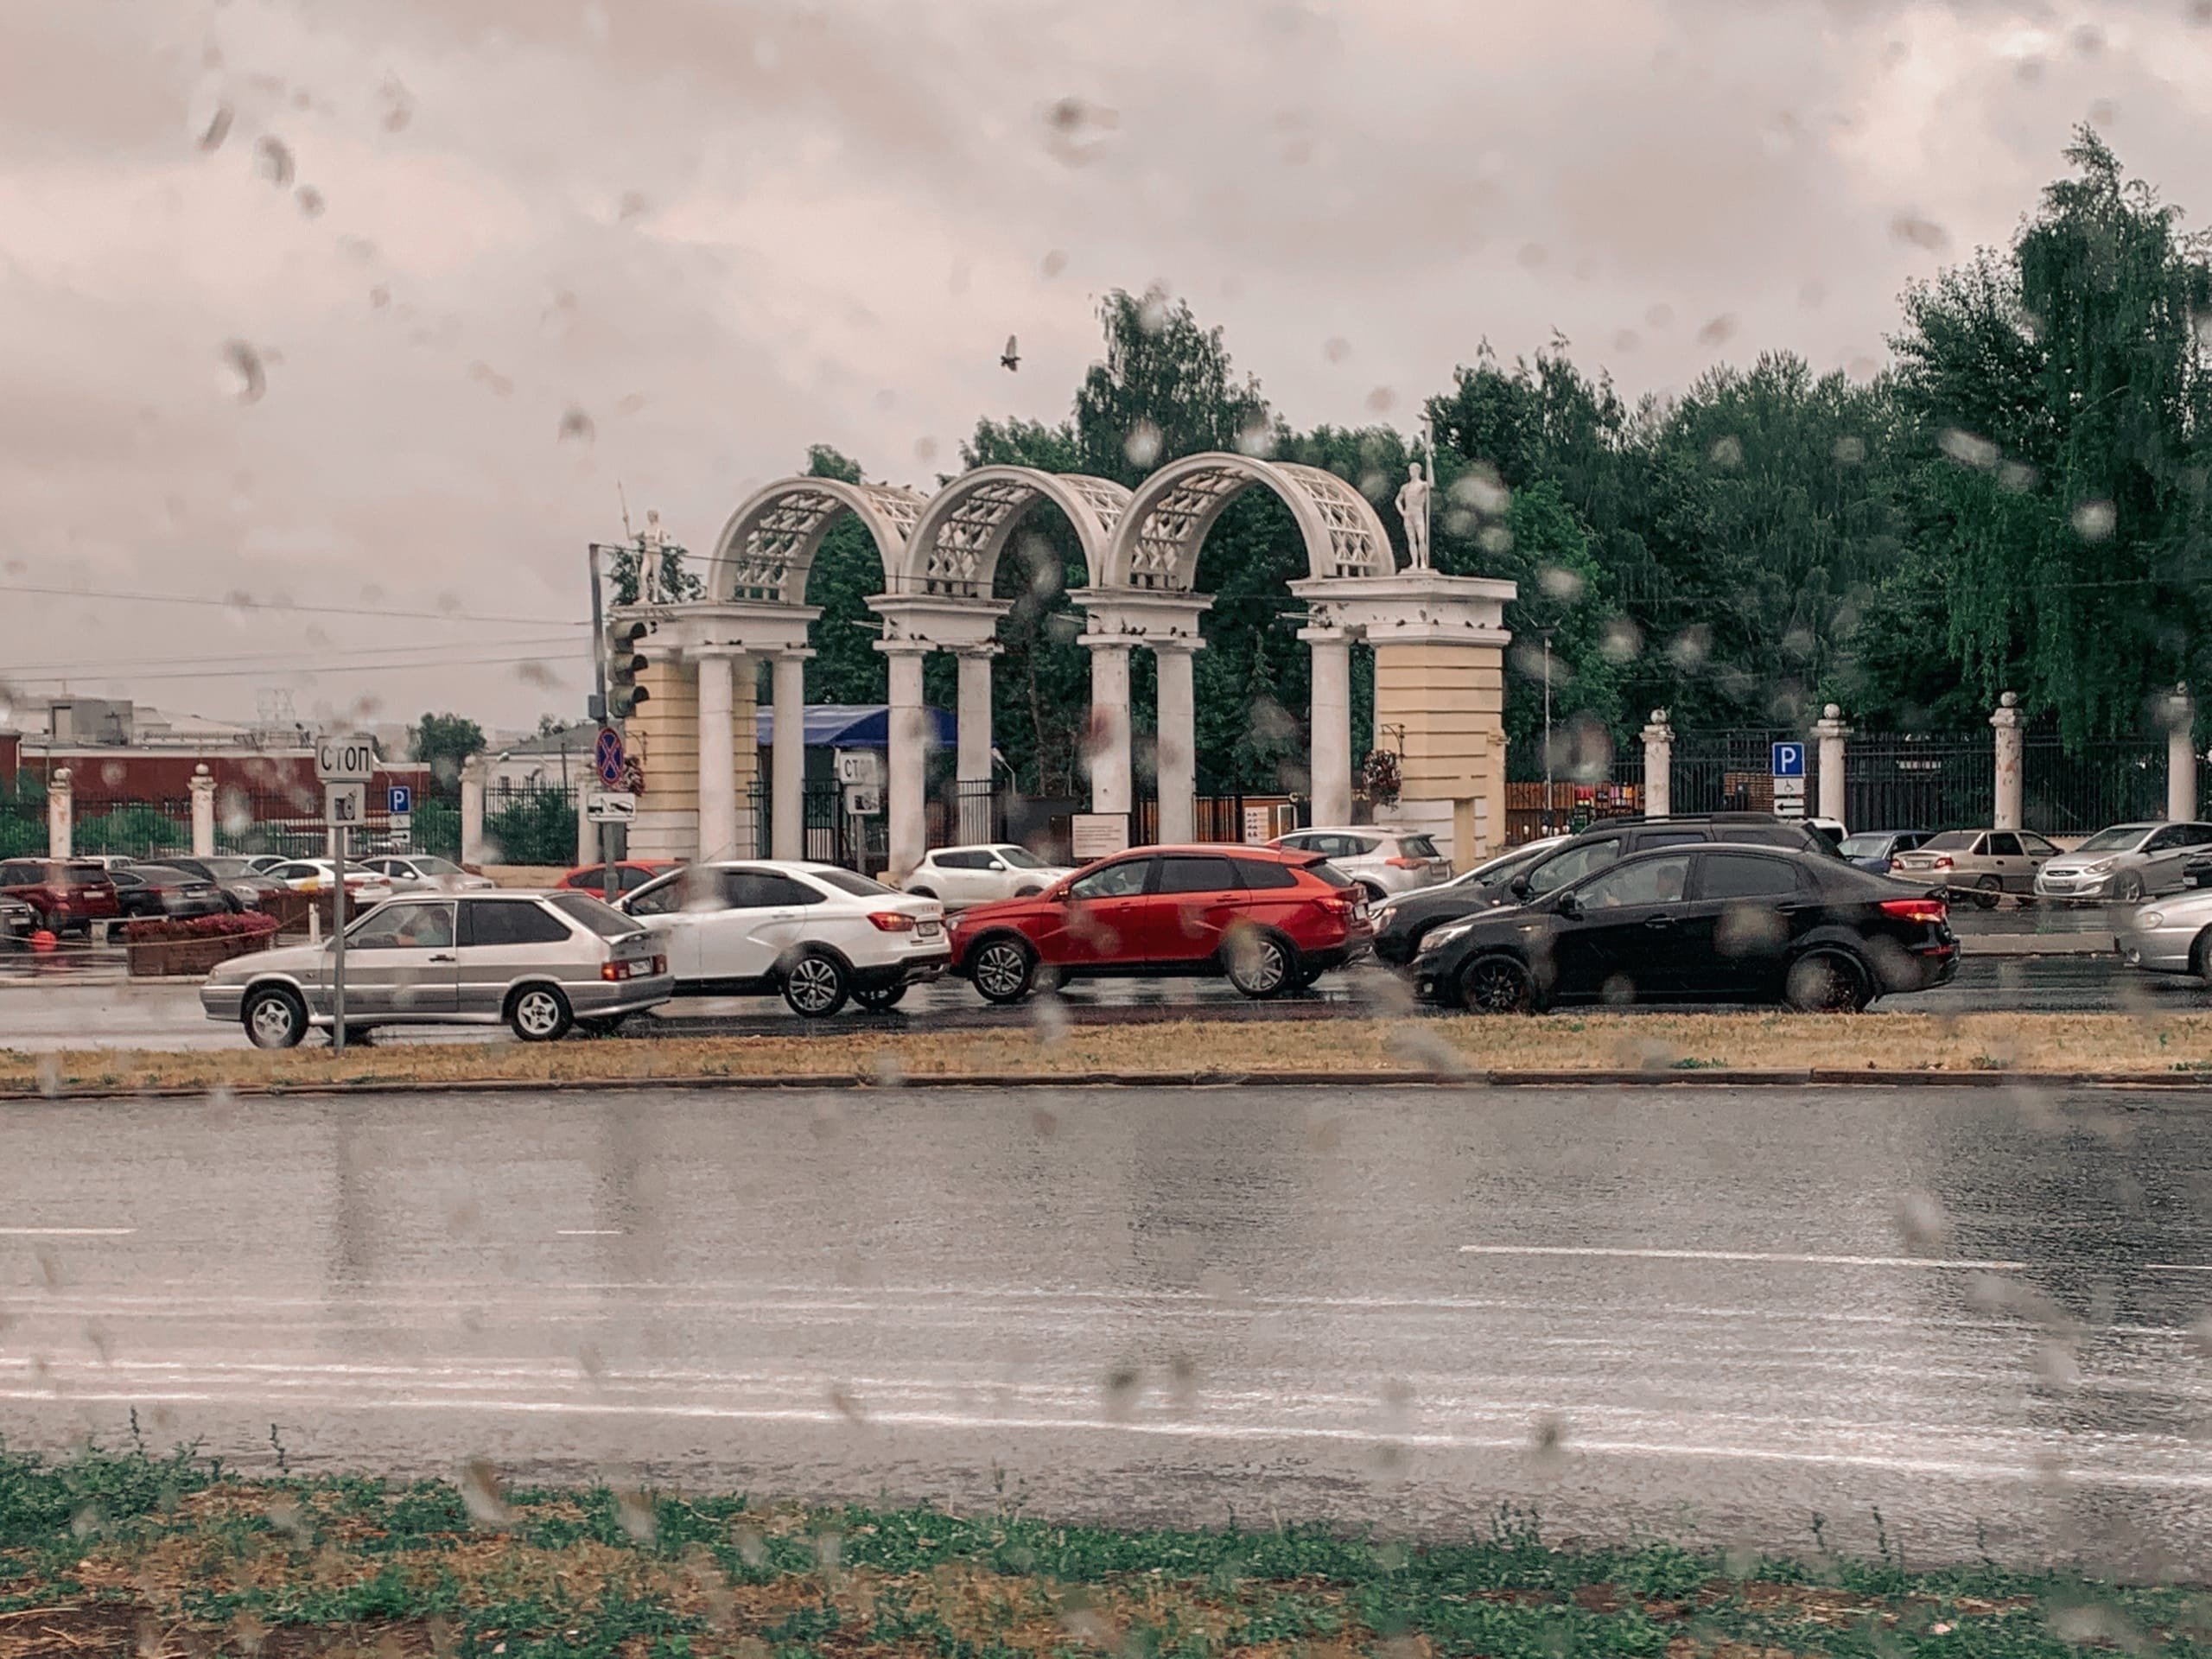 

В Ижевске из-за коронавируса отменили празднование дня рождения парка Кирова  

